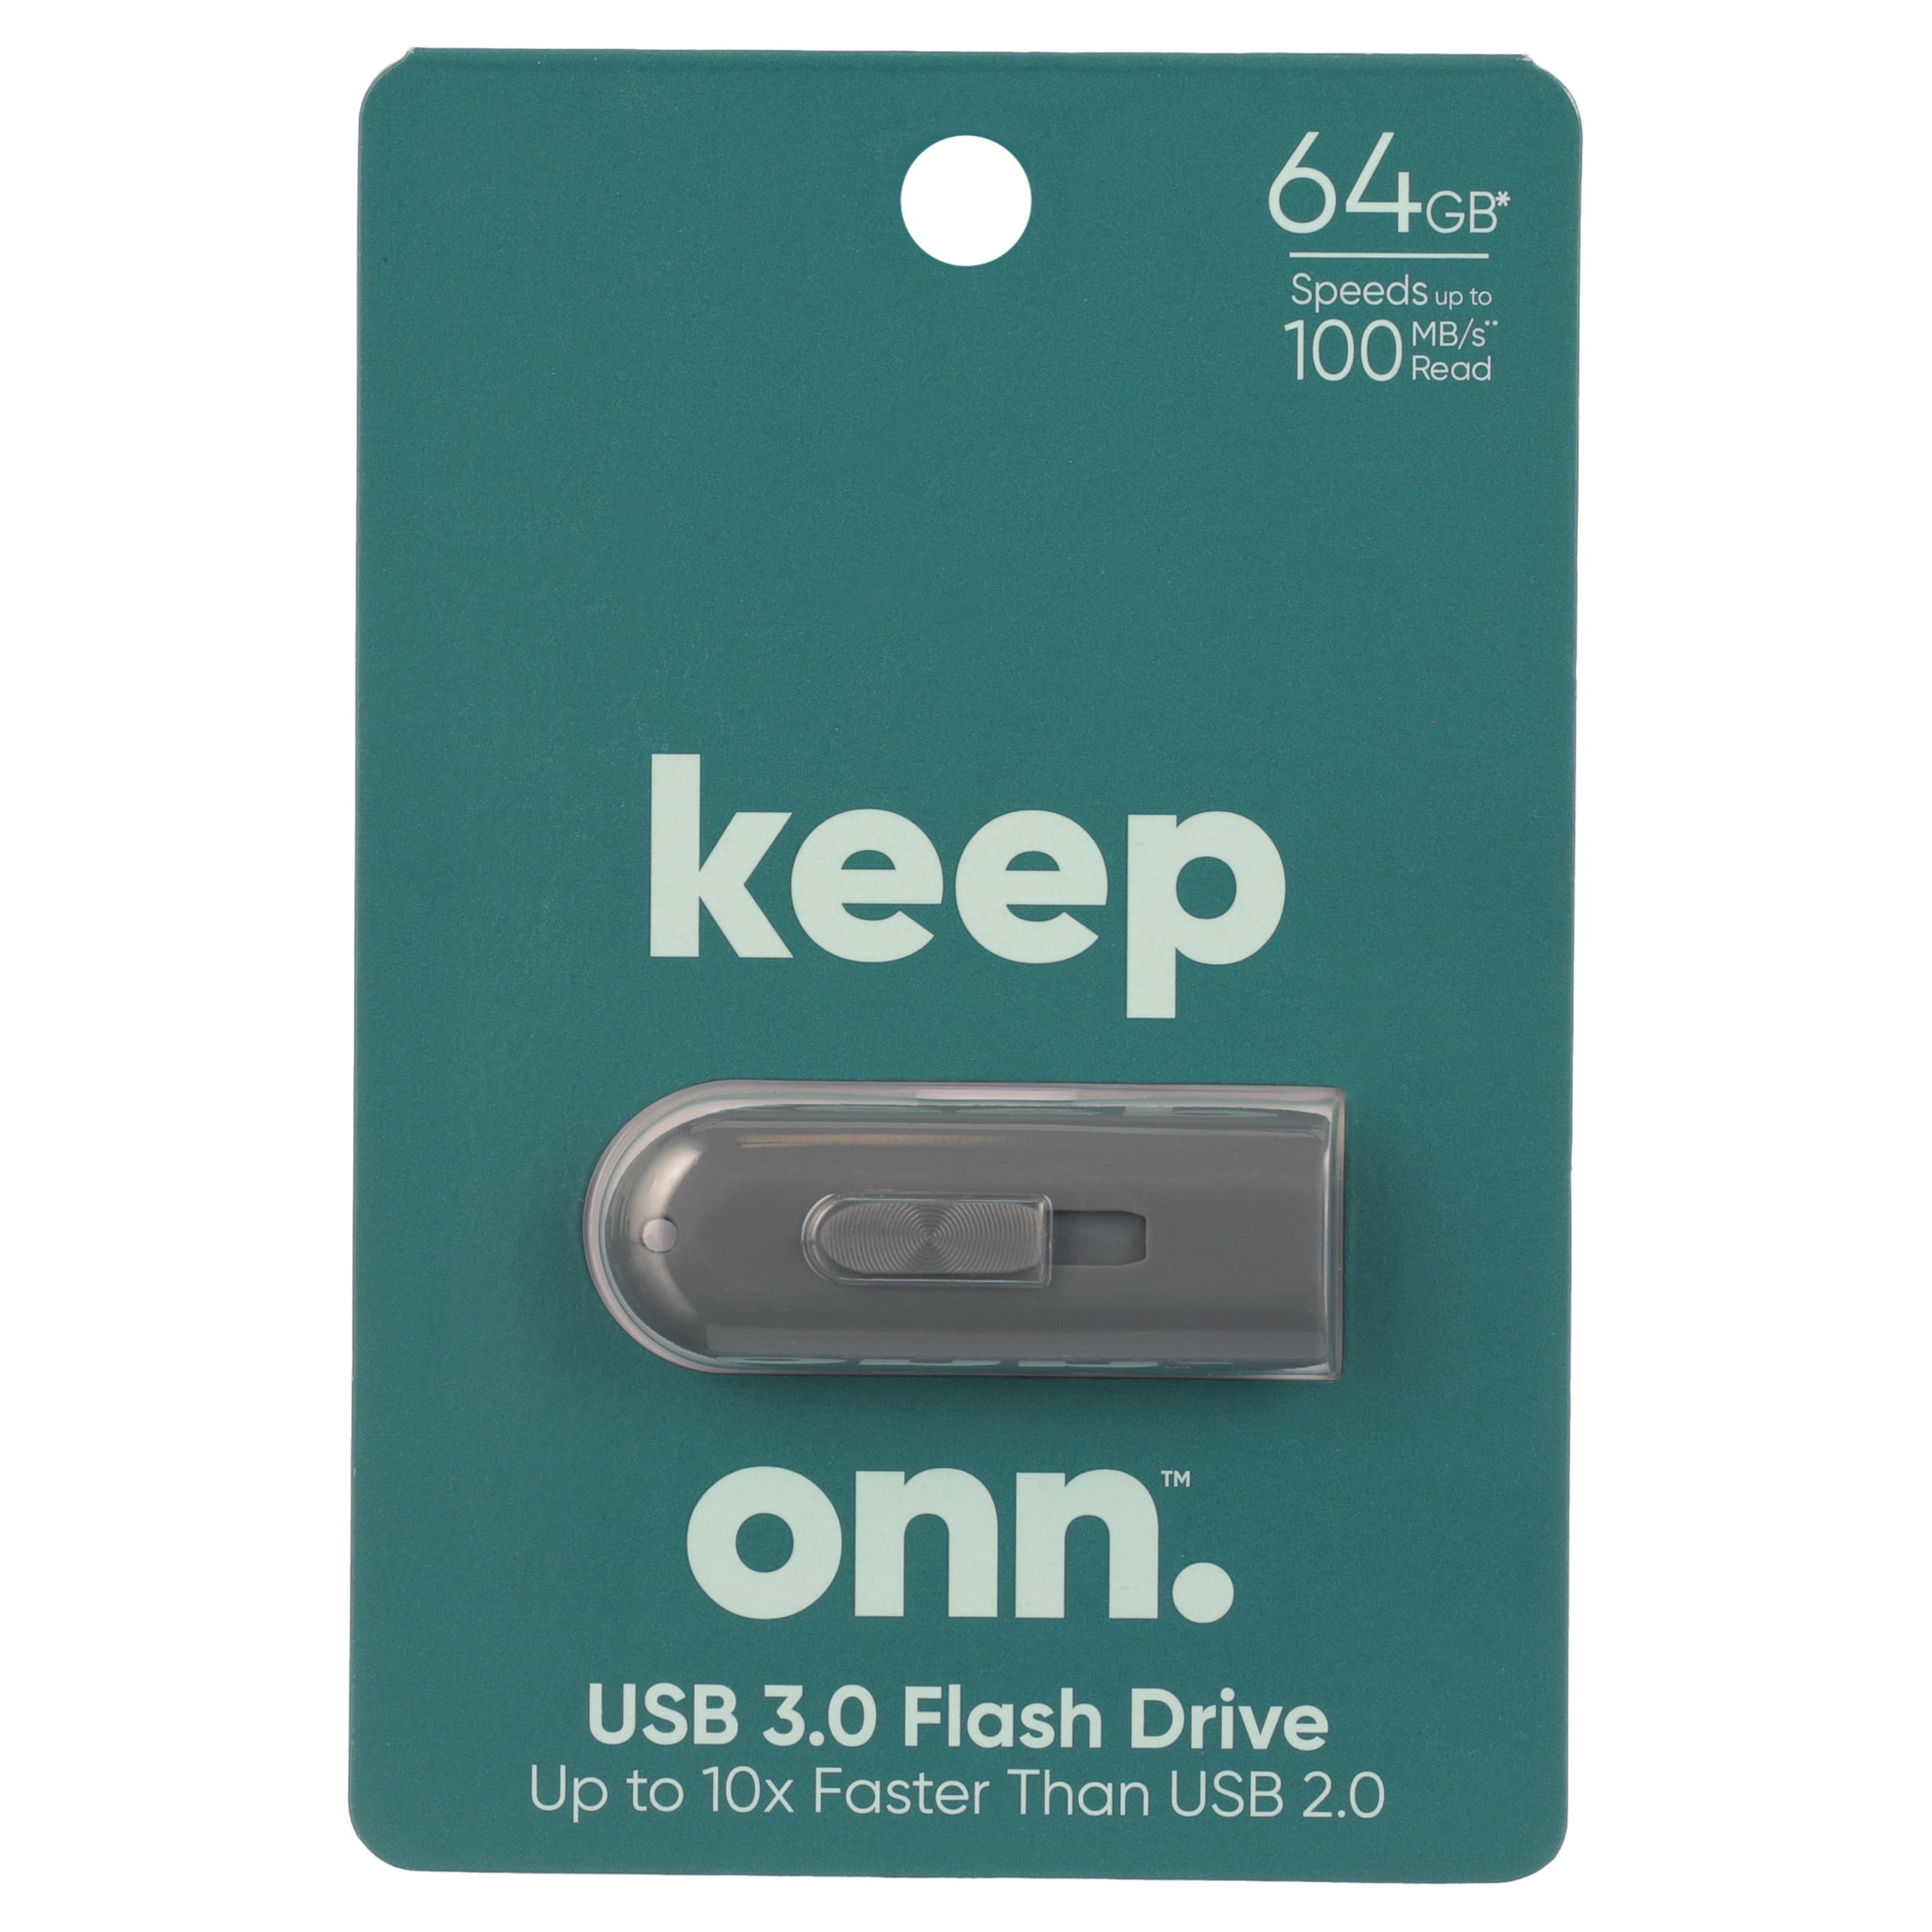 Kabelbane at tilbagetrække Gutter onn. USB 3.0 Flash Drive for Tablets and Computers, 64 GB Capacity -  Walmart.com